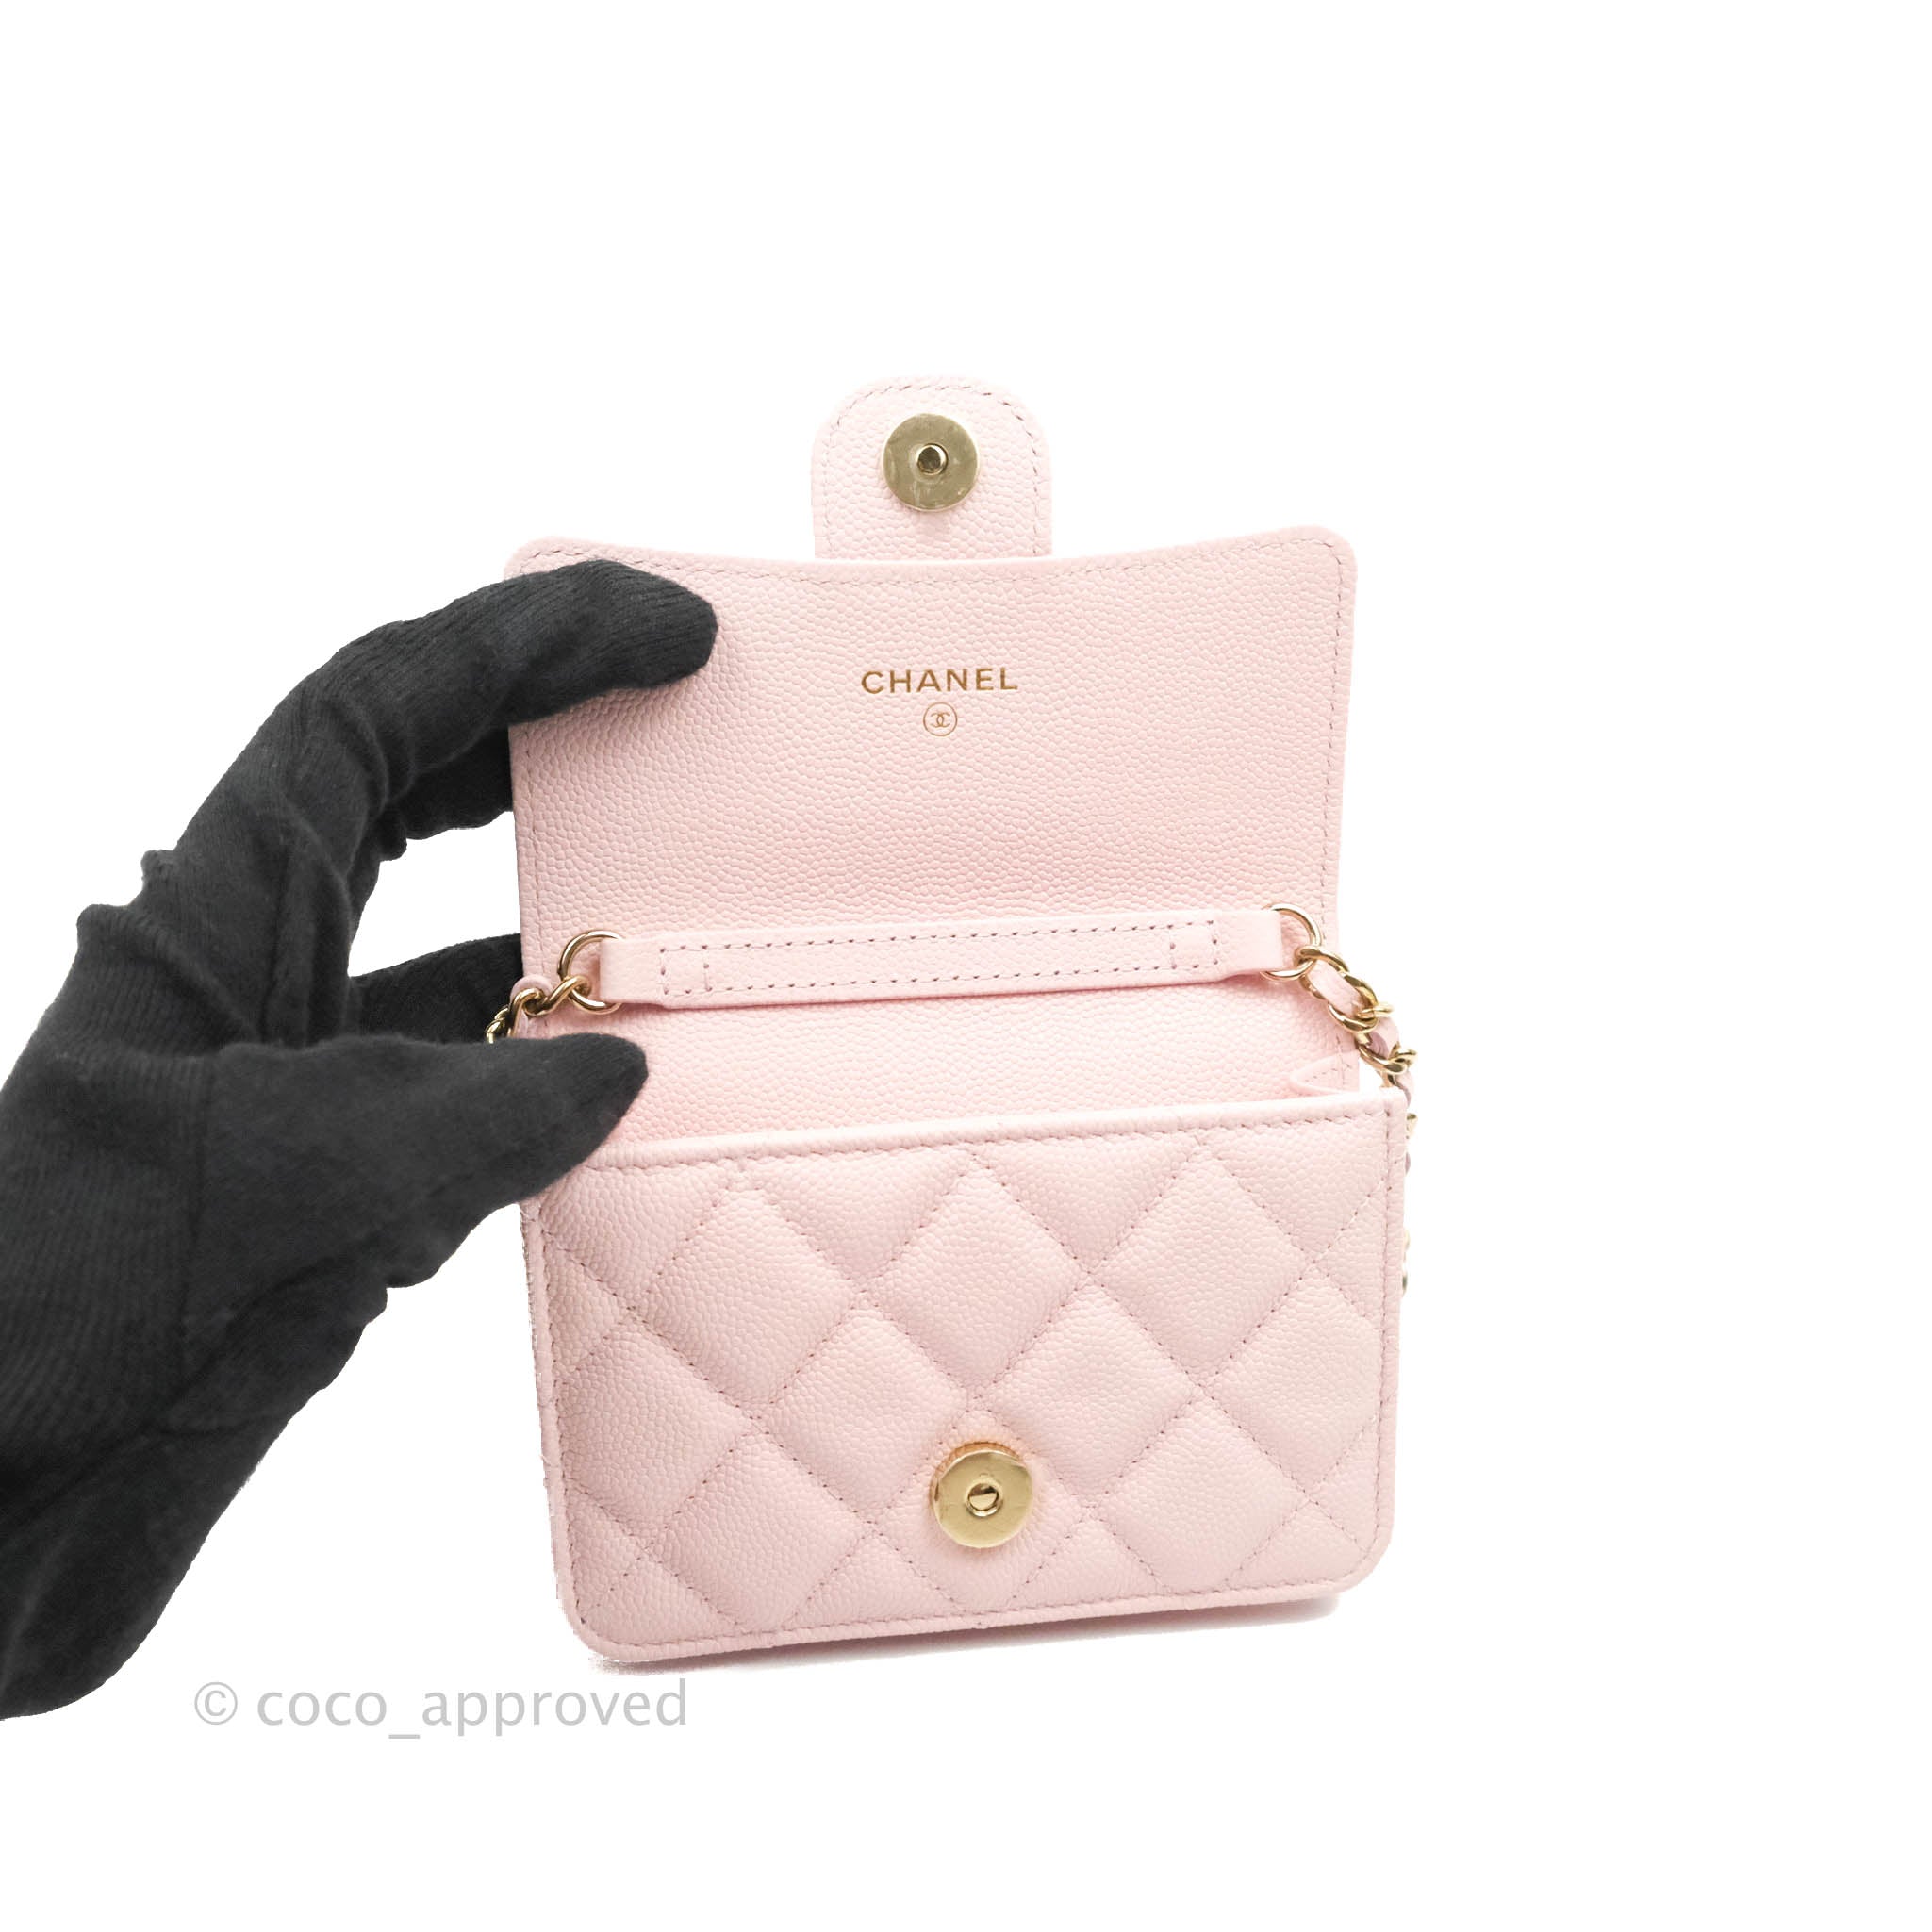 pink chanel card holder wallet